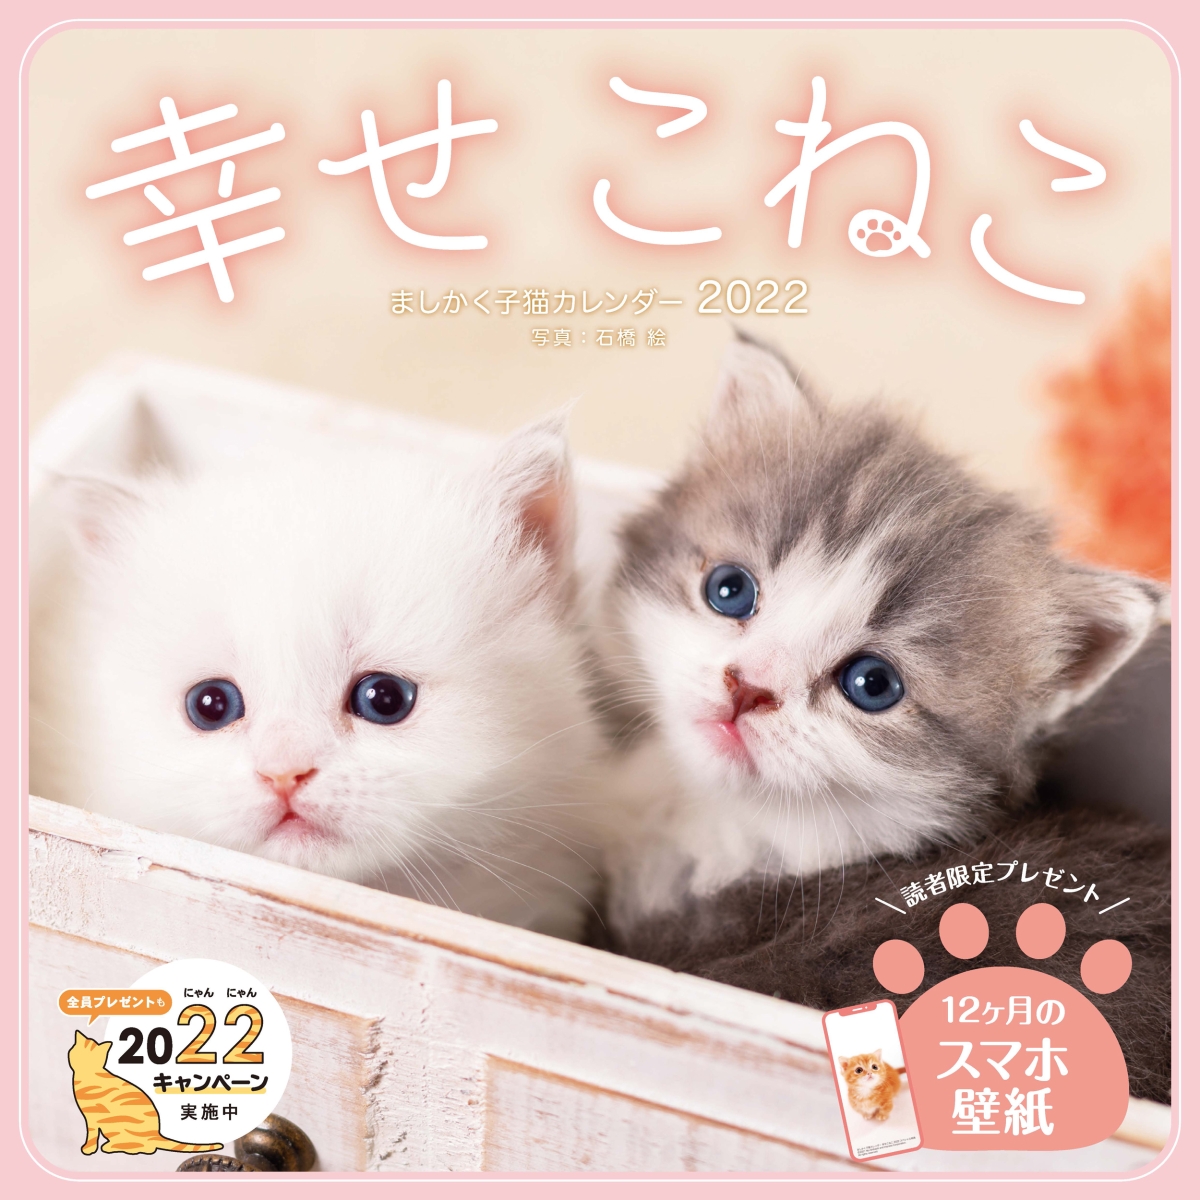 楽天ブックス ましかく子猫カレンダー幸せこねこカレンダー 2022 9784295012023 本